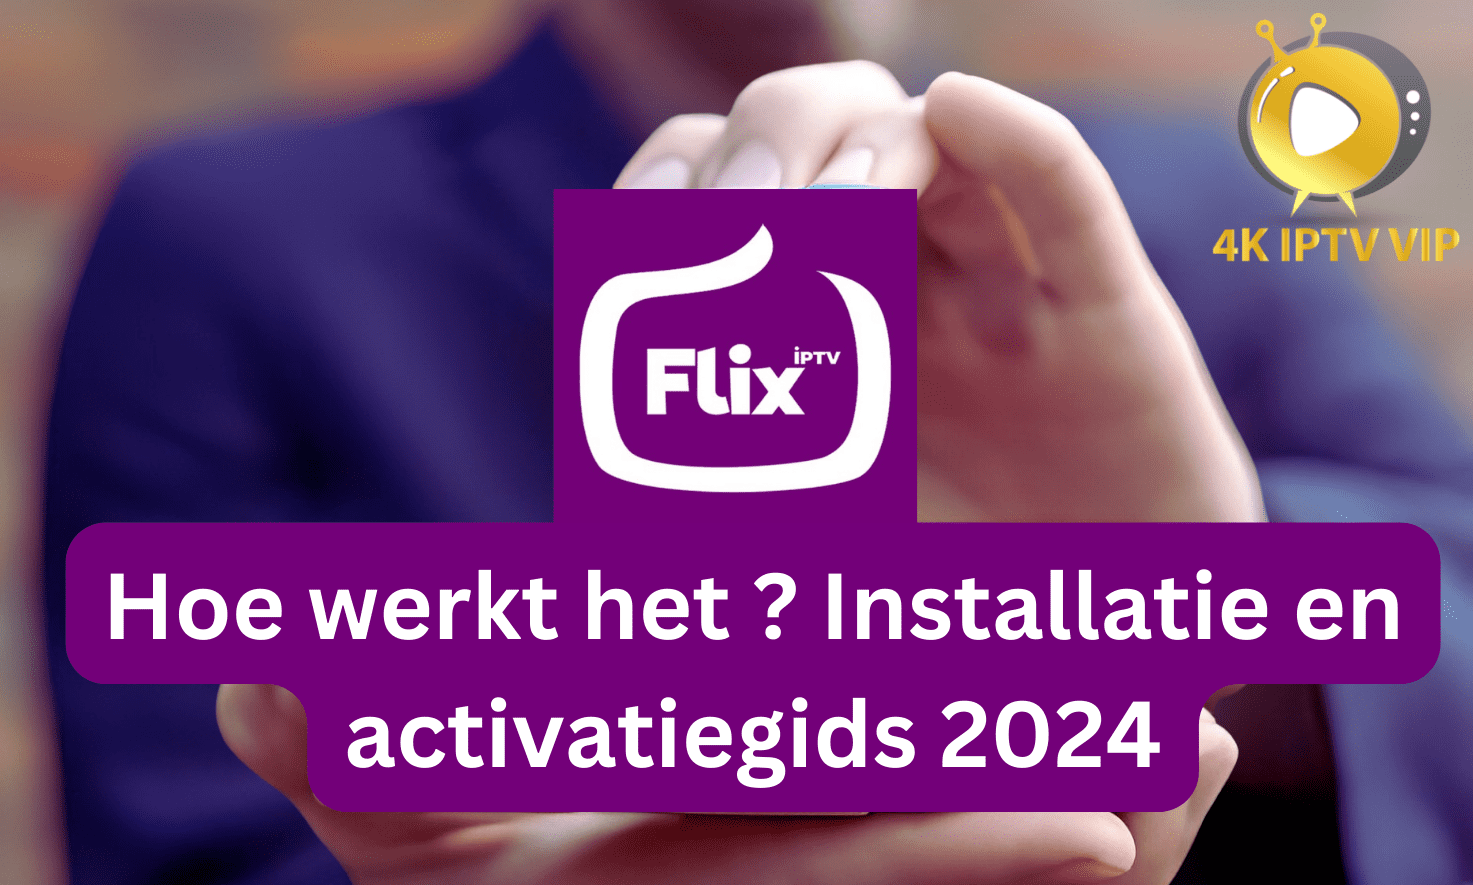 Flix iptv installatie 2024